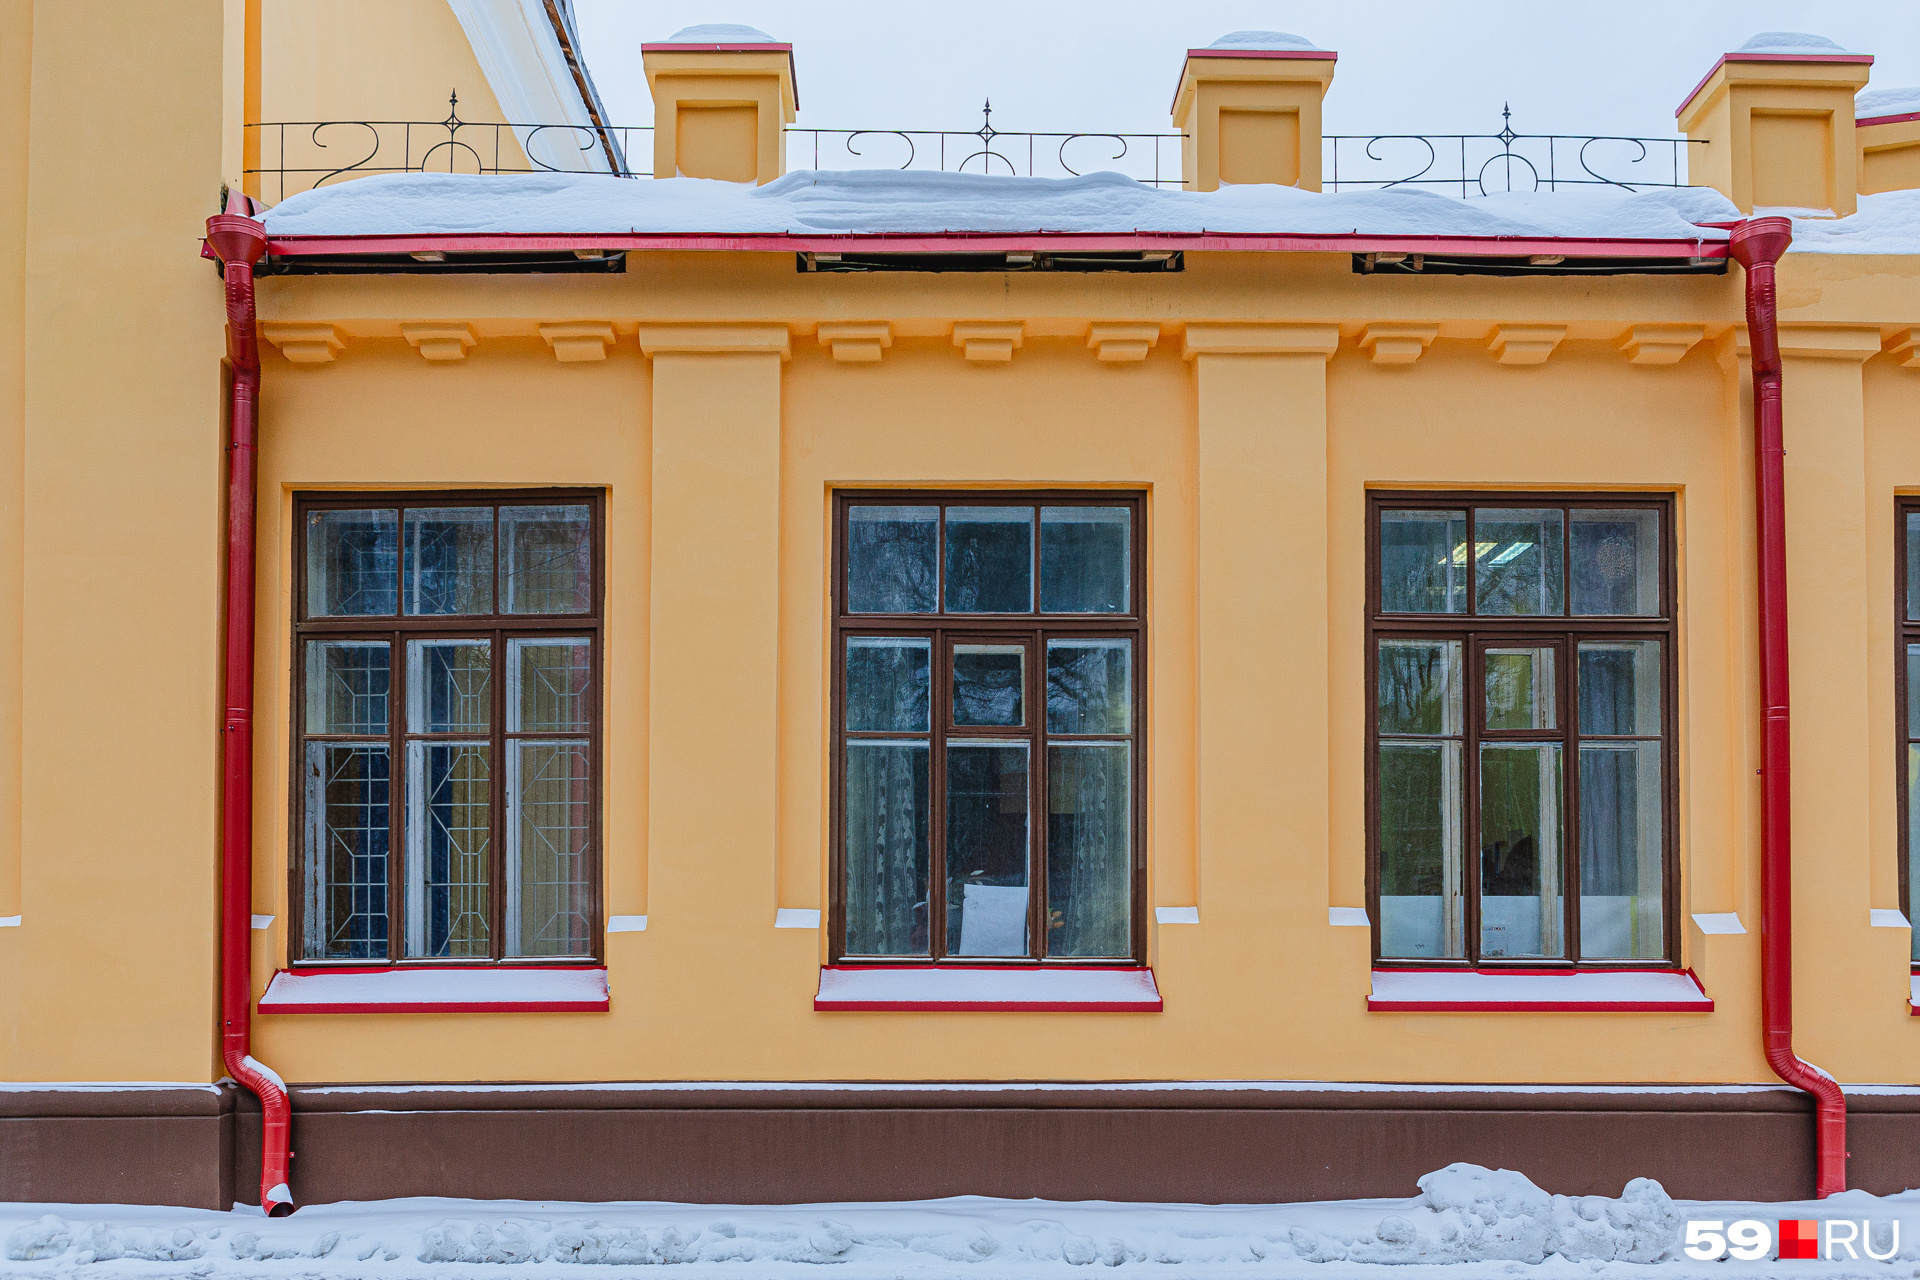 Наличники на фасаде покрасили красным цветом (так было и до революции), восстановили декоративные элементы